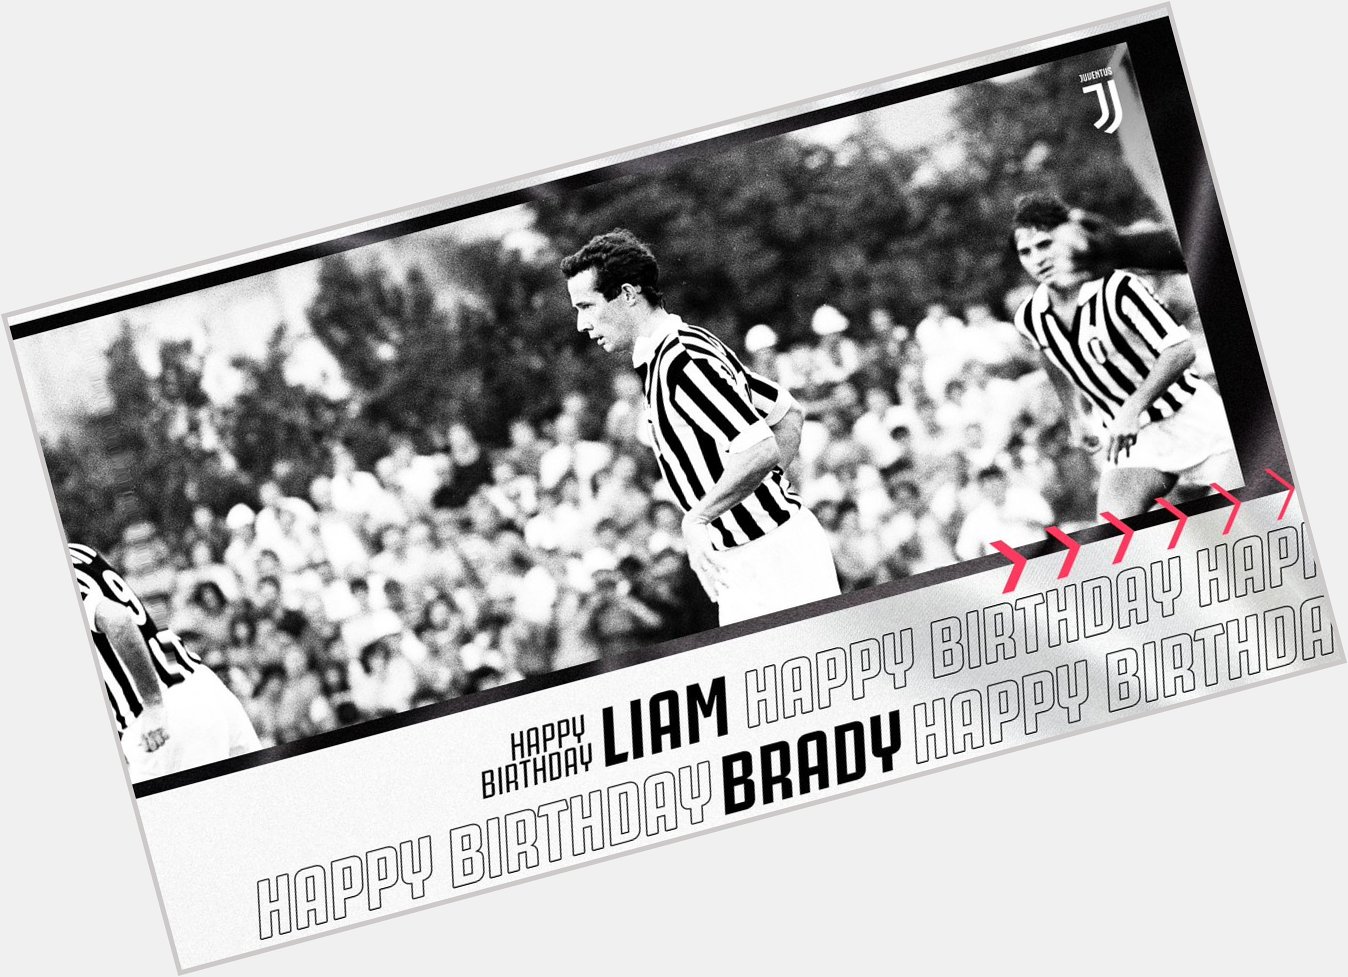  Happy birthday, Liam Brady!       